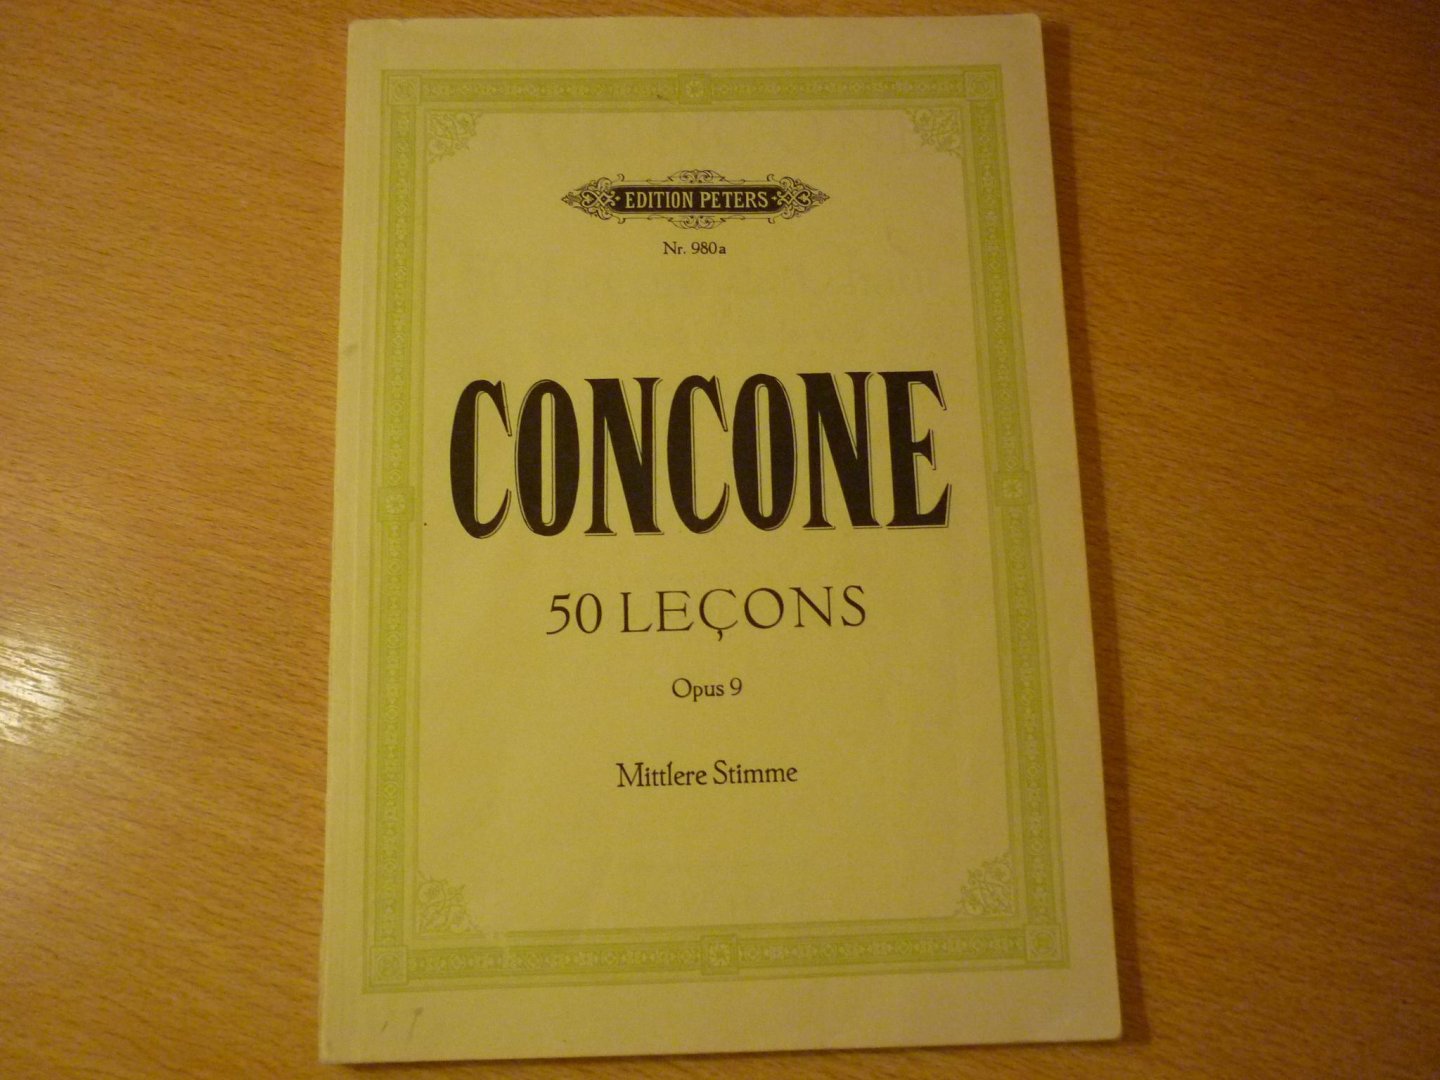 Concone; Giuseppe - 50 Lecons de Chant; pour le m'dium de la voix; Opus 9 (Ausgabe fur mittlere stimme) (Max Friedlaender)